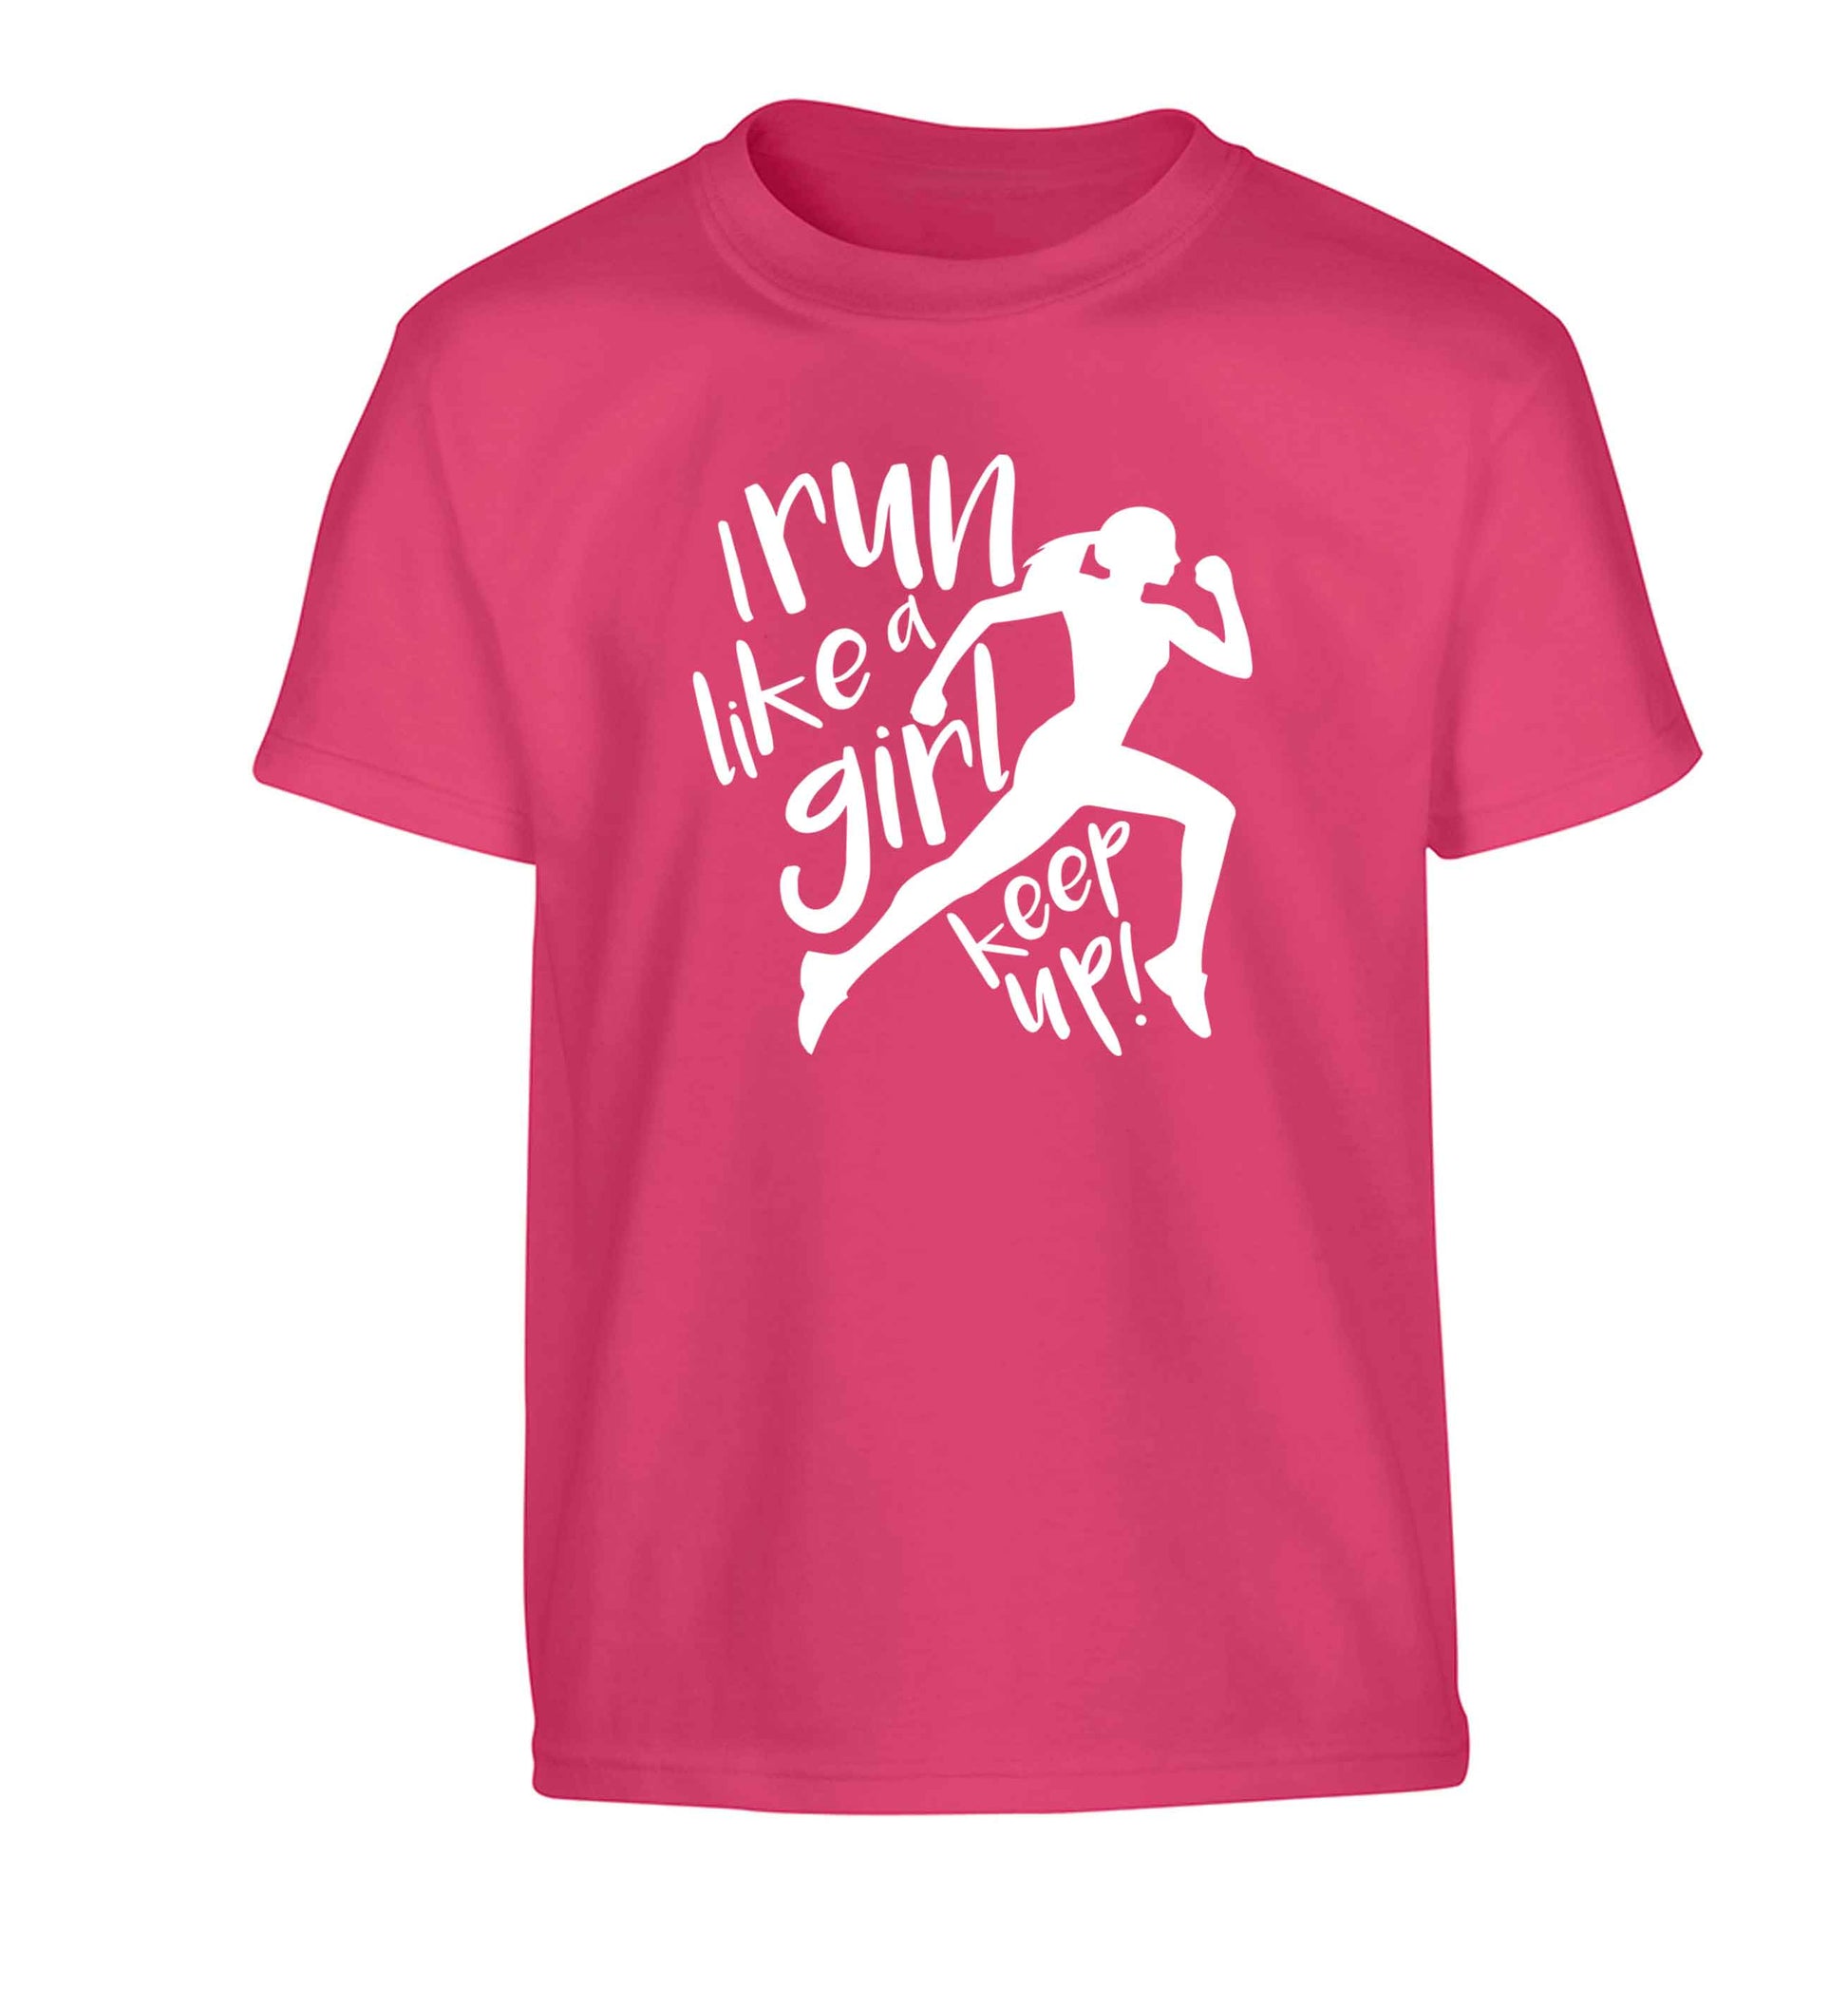 I run like a girl, keep up! Children's pink Tshirt 12-13 Years